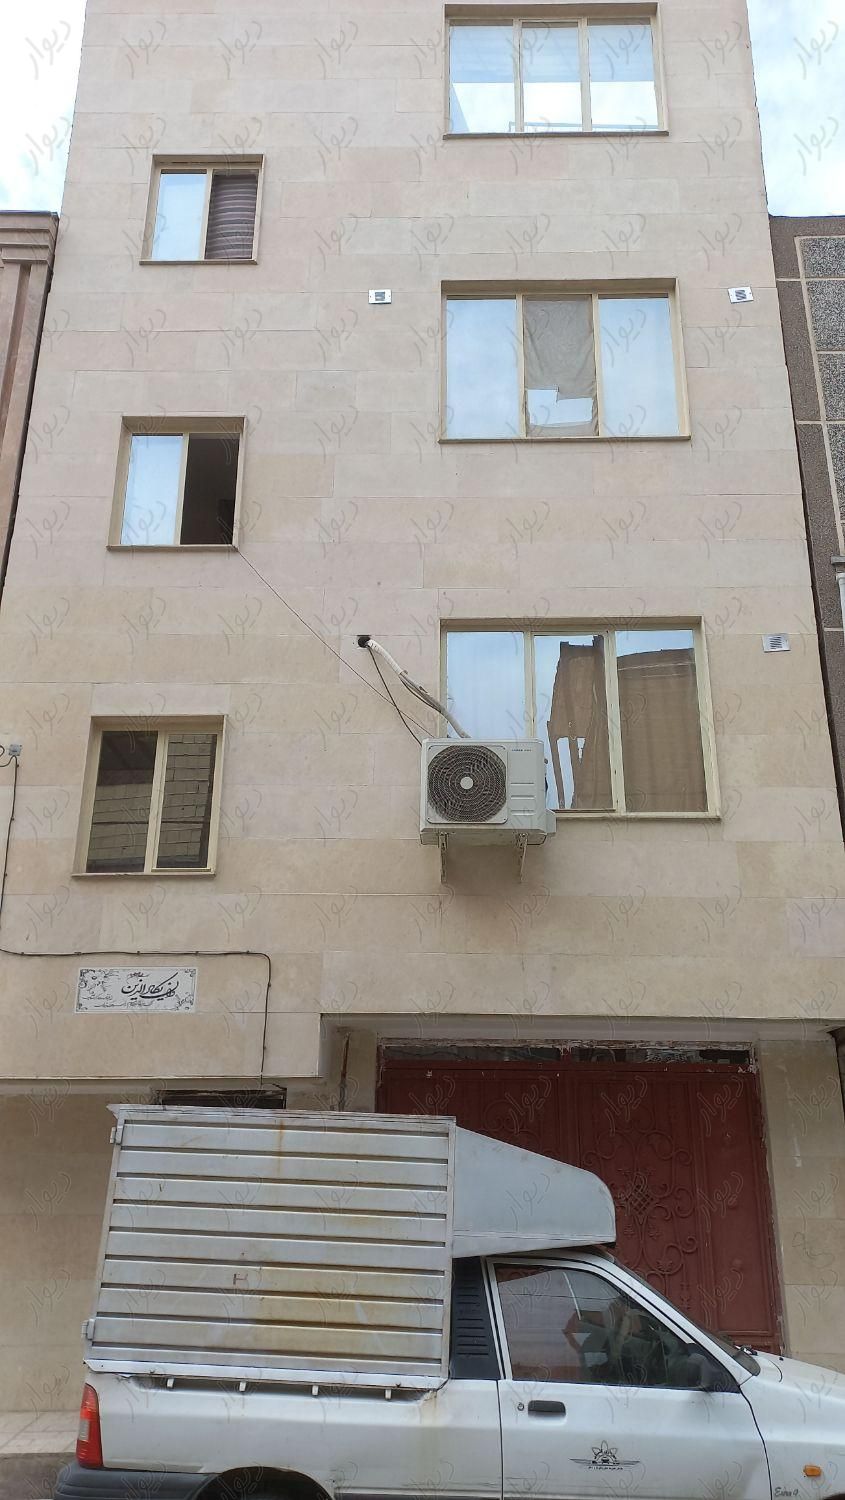 خانه سه طبقه با پارکینگ|فروش خانه و ویلا|تهران, پاتریس لومومبا|دیوار